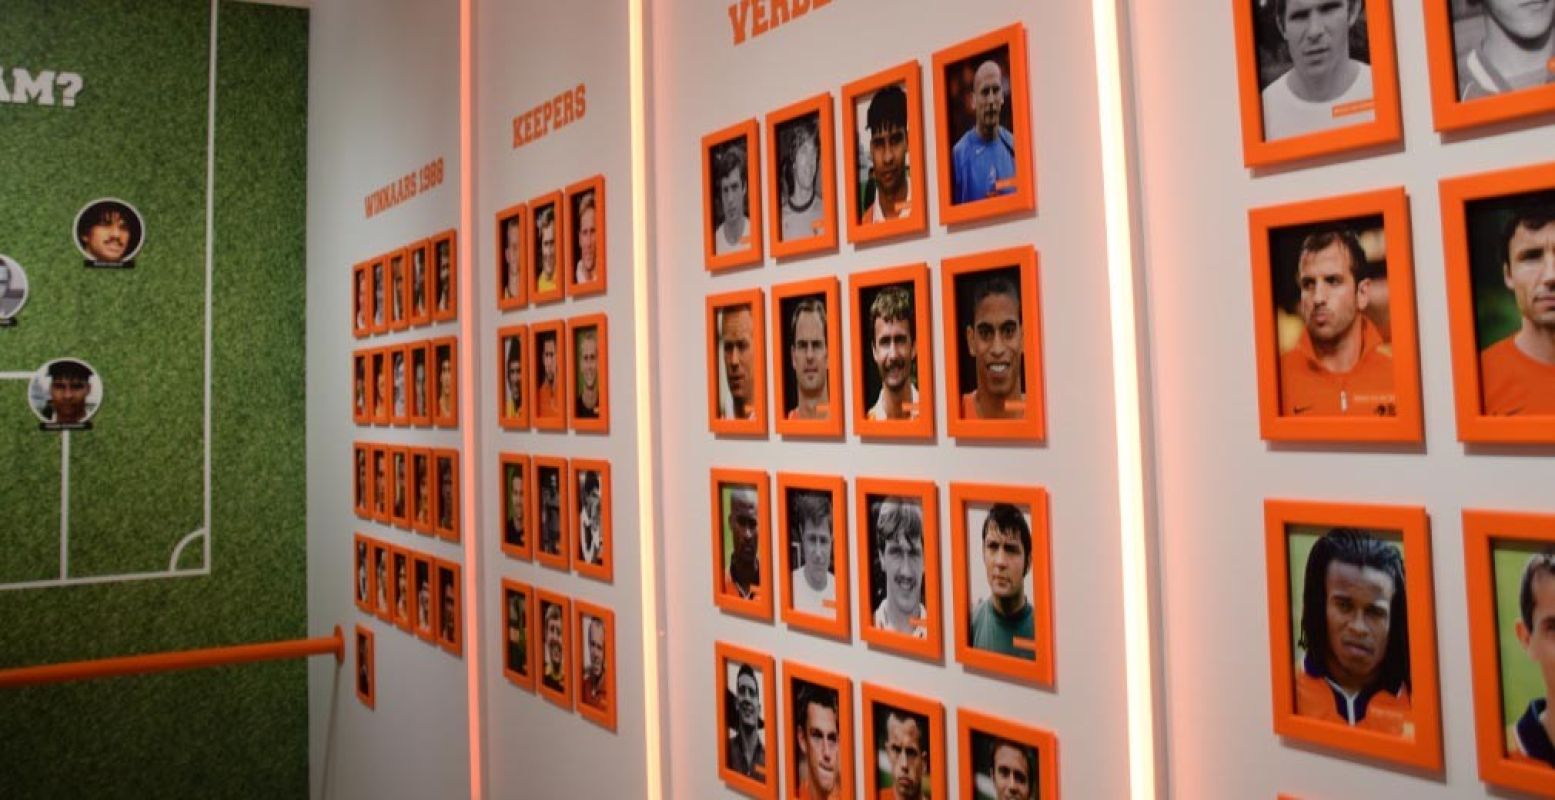 De hall of fame onder de Nederlandse voetballers. Foto: redactie DagjeWeg.NL